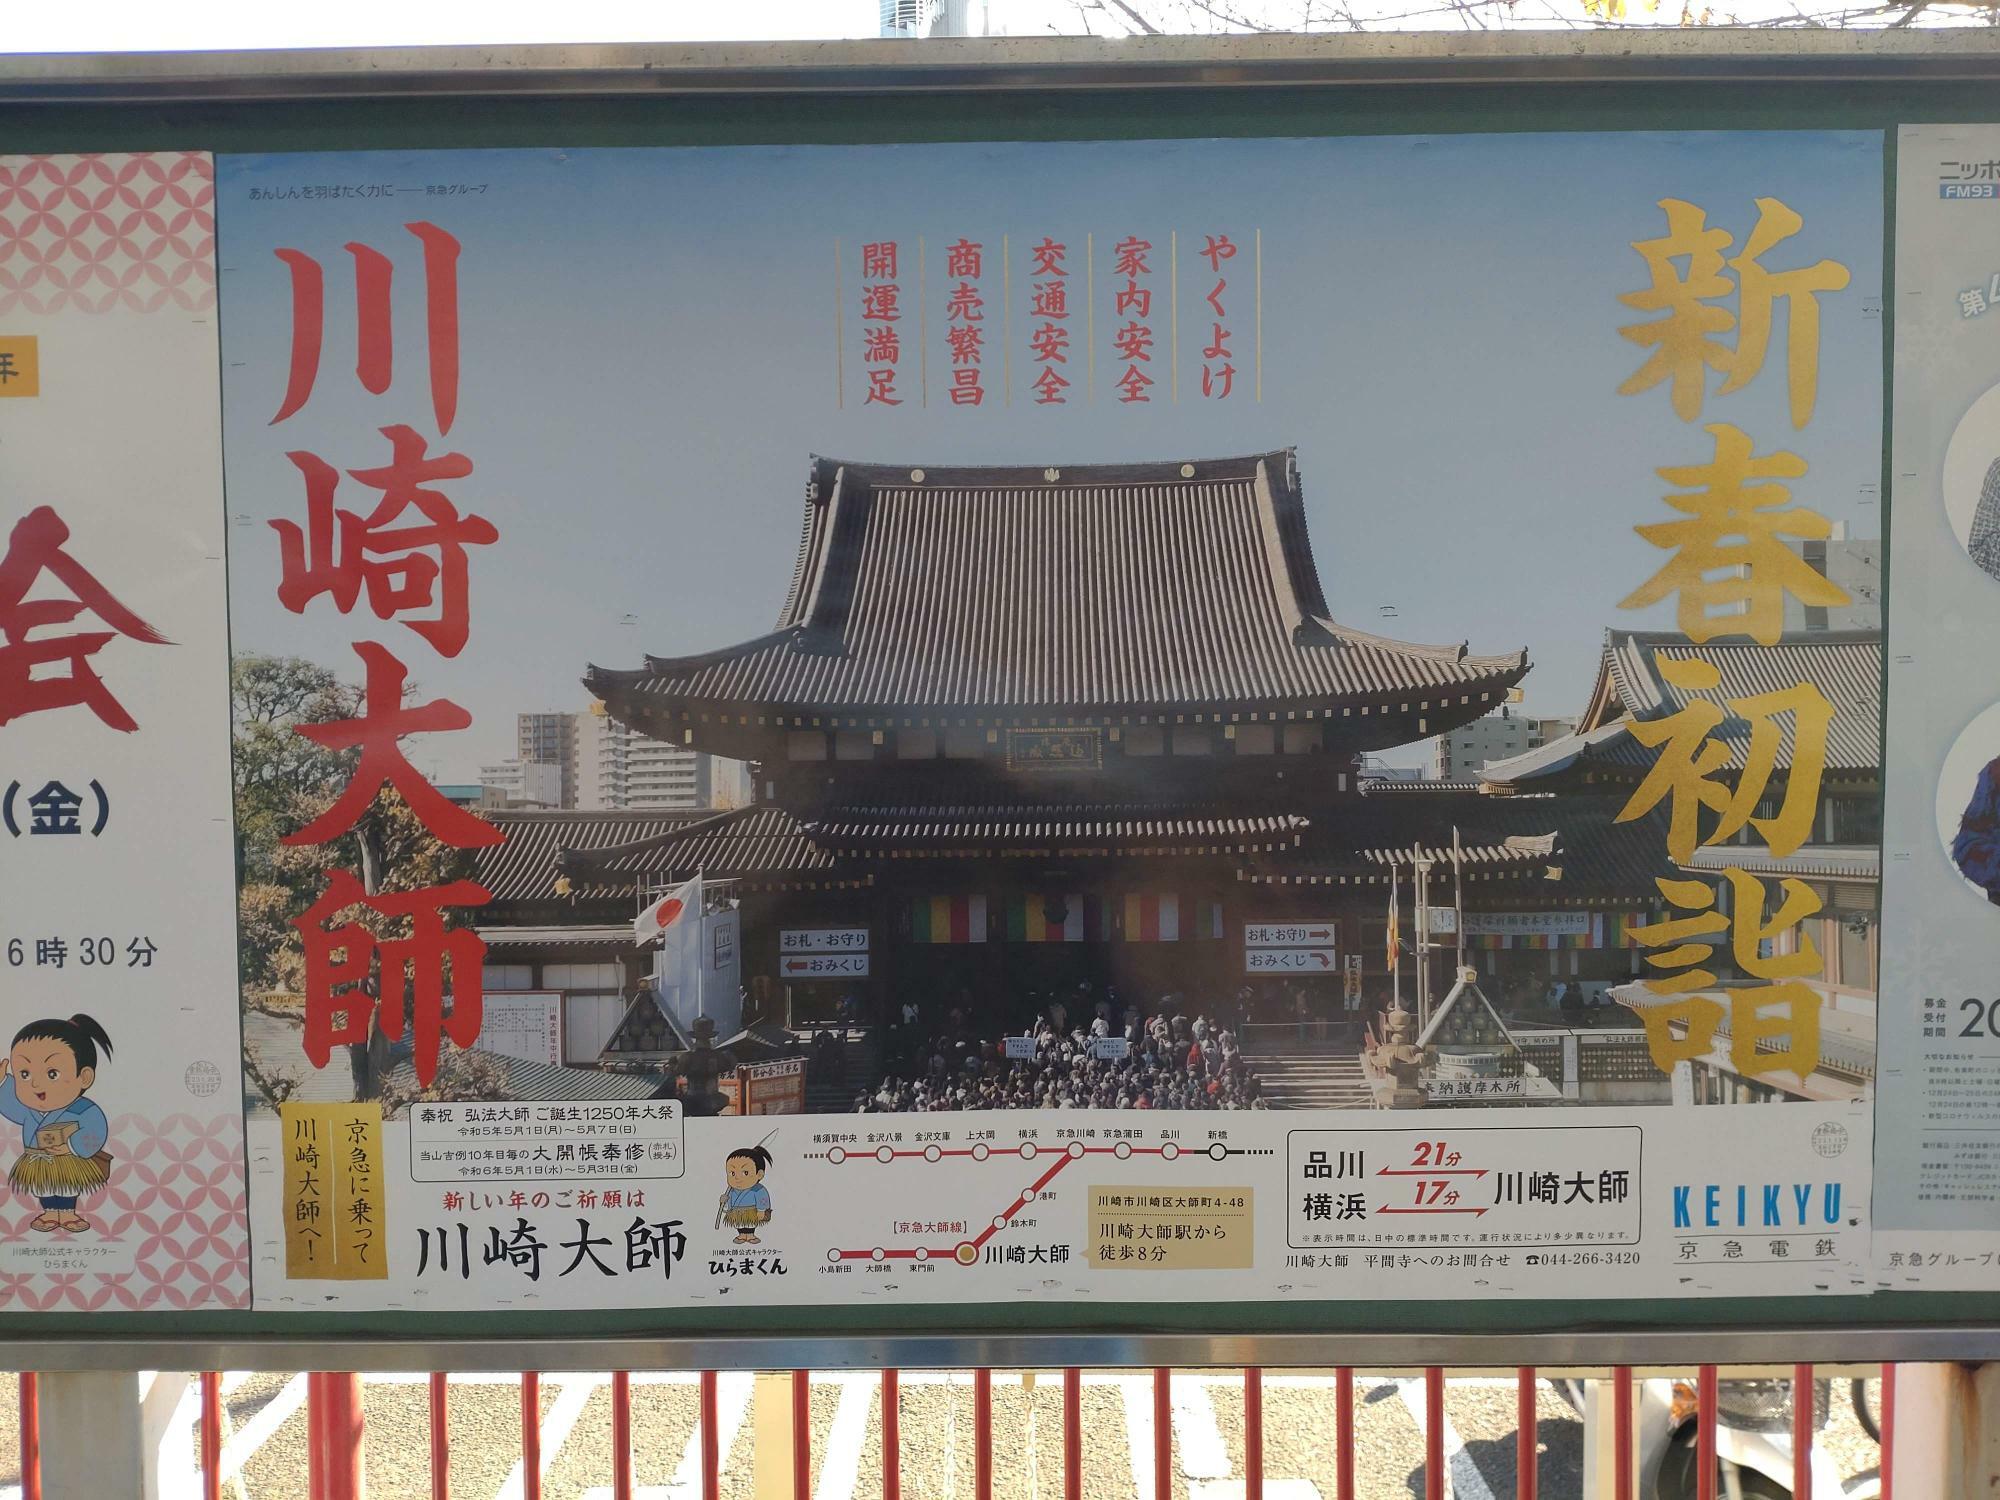 川崎大師駅で見つけた「新春初詣・川崎大師」のポスター